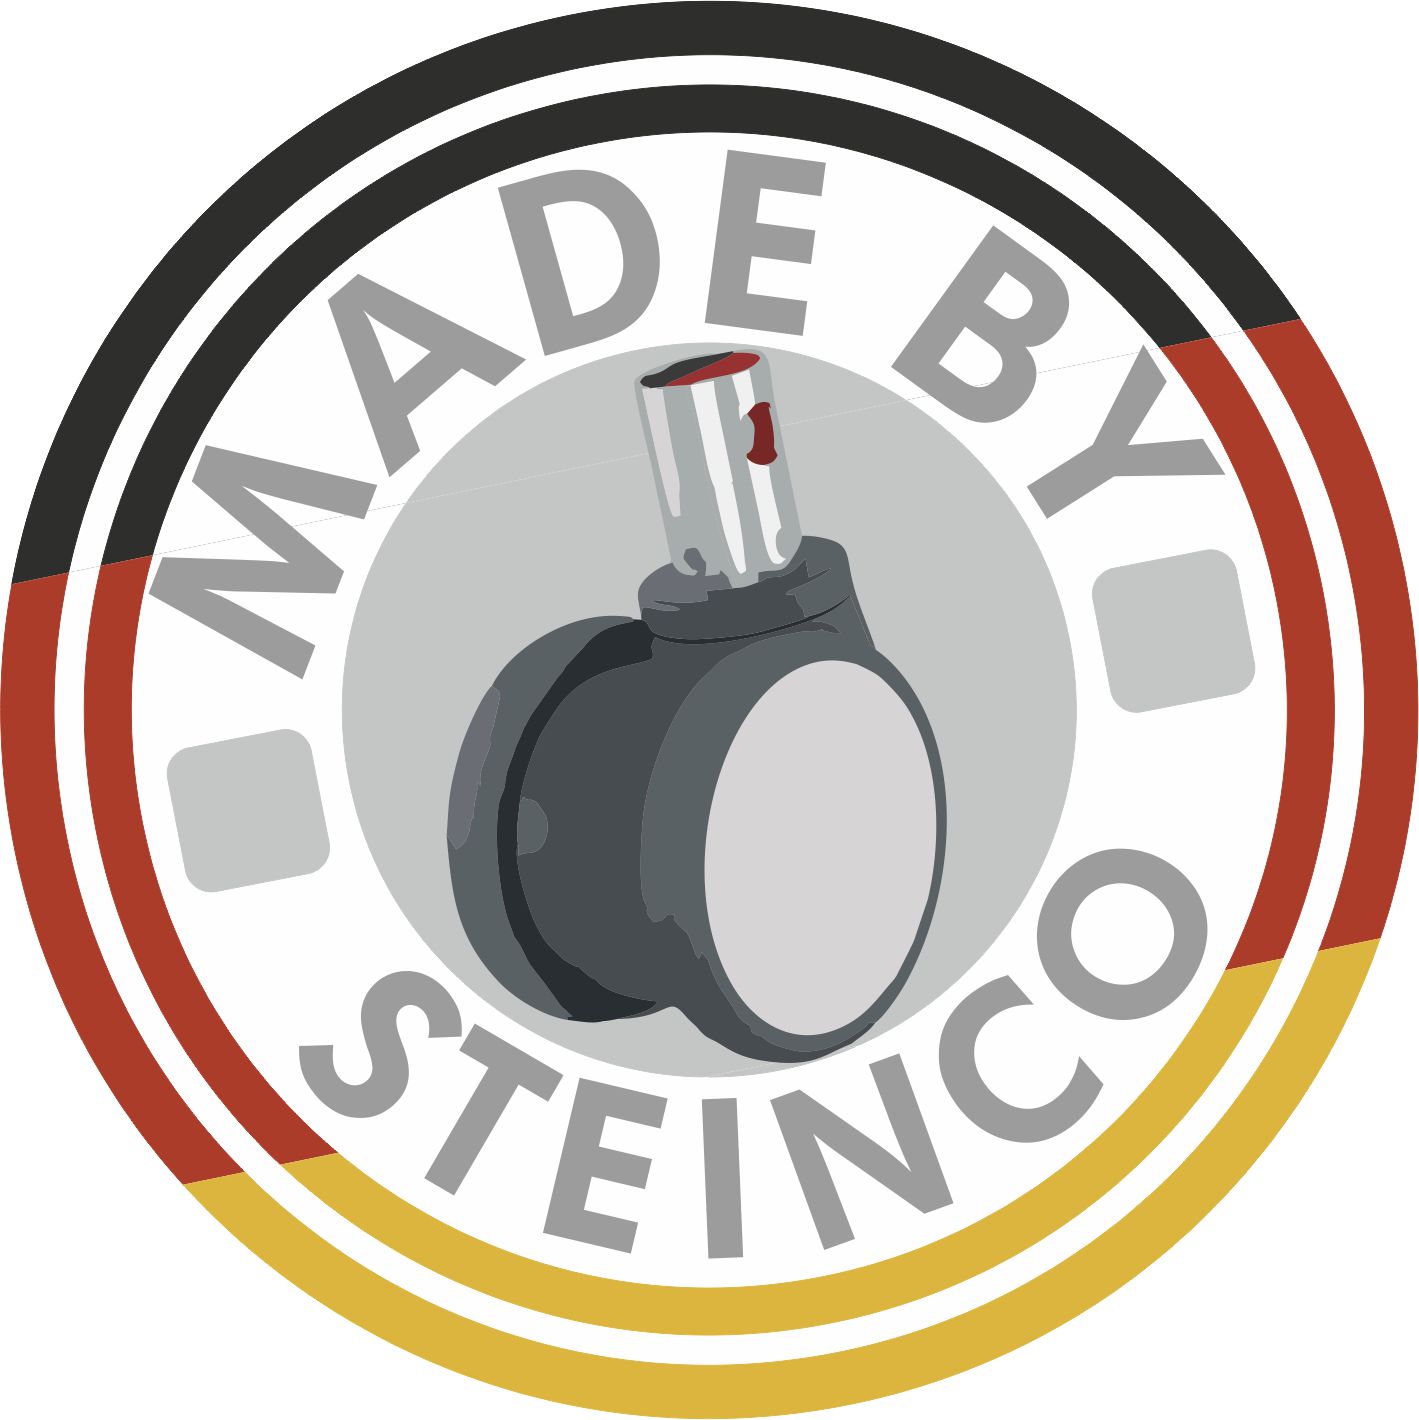 [Translate to Französisch:] Rollen und Räder - Made by STEINCO and Made in Germany